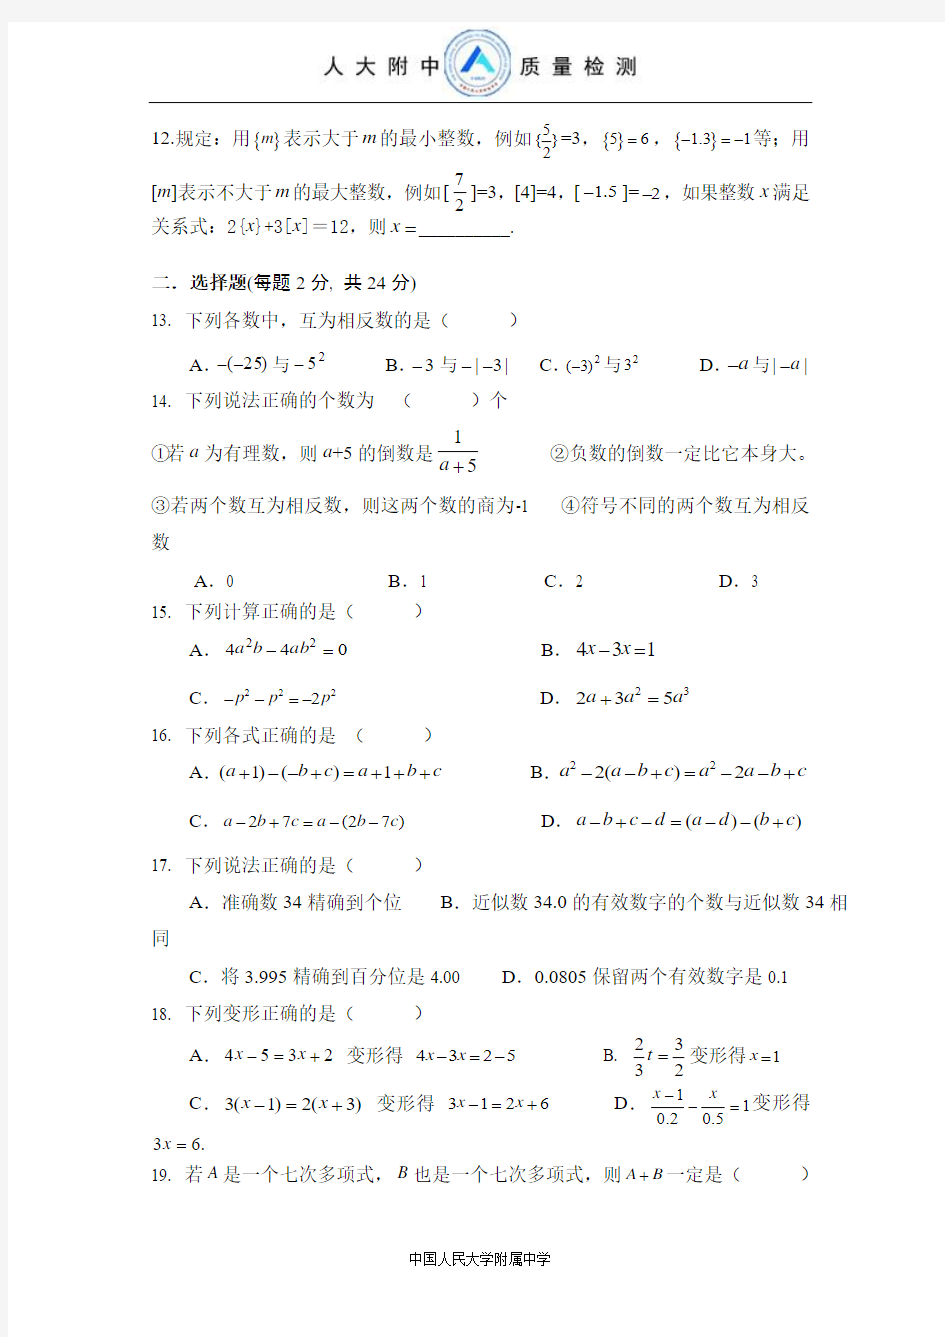 中国人民大学附属中学初一数学质量检测卷(试卷一)